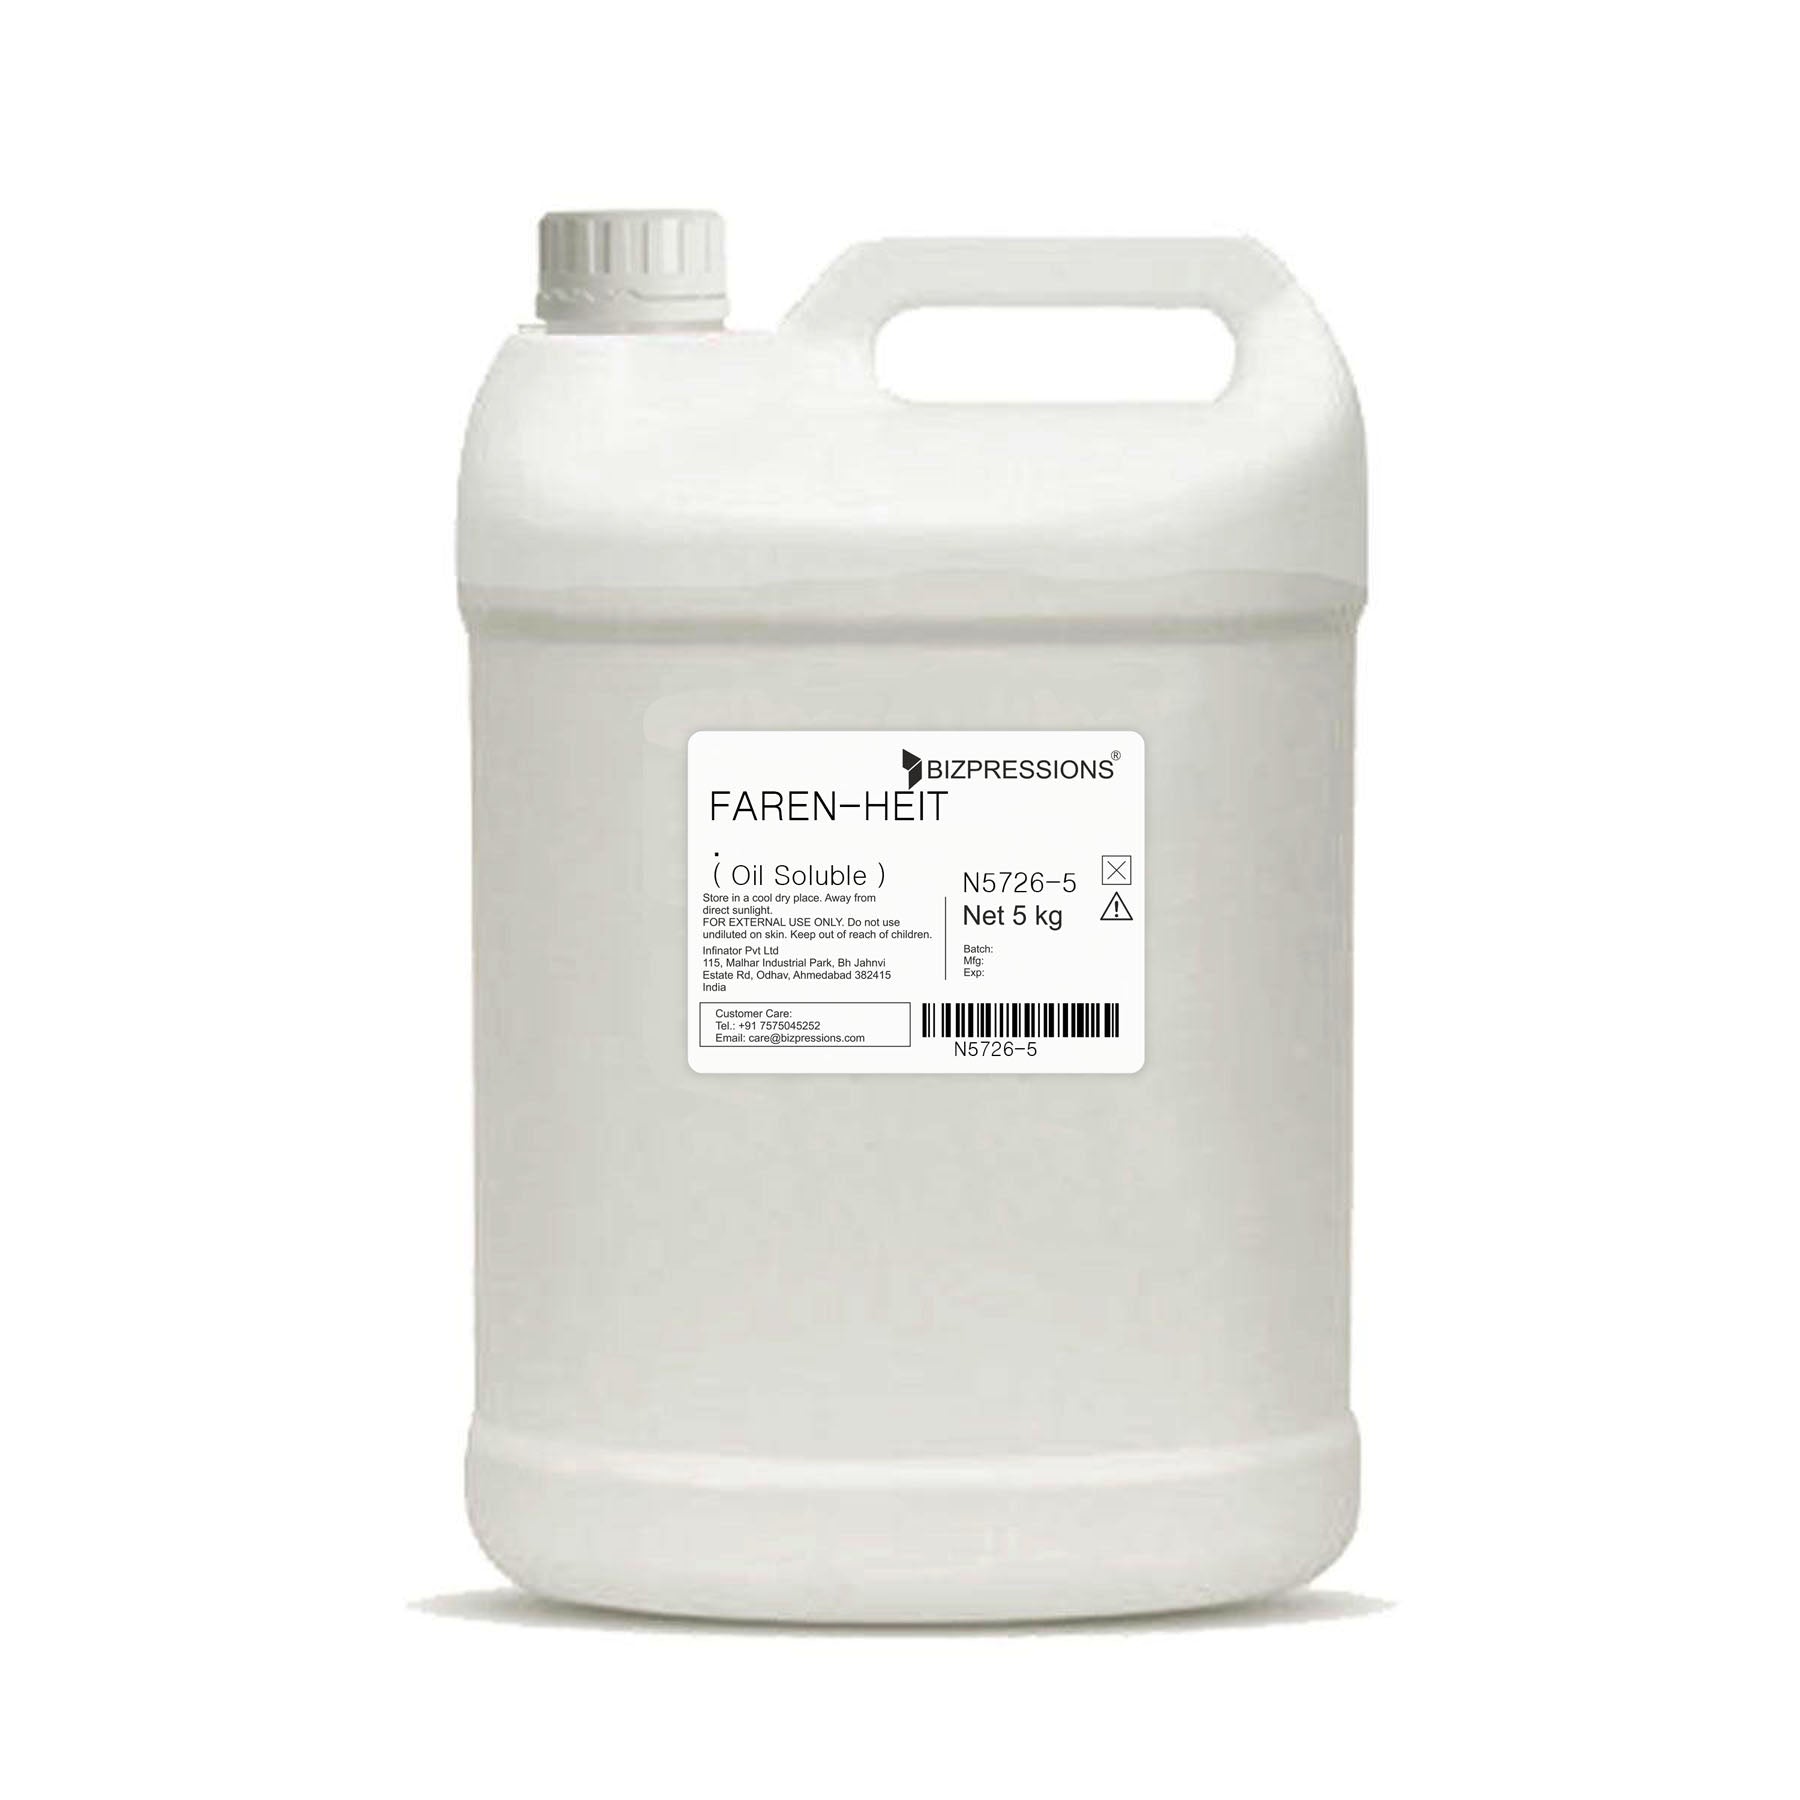 FAREN-HEIT - Fragrance ( Oil Soluble ) - 5 kg